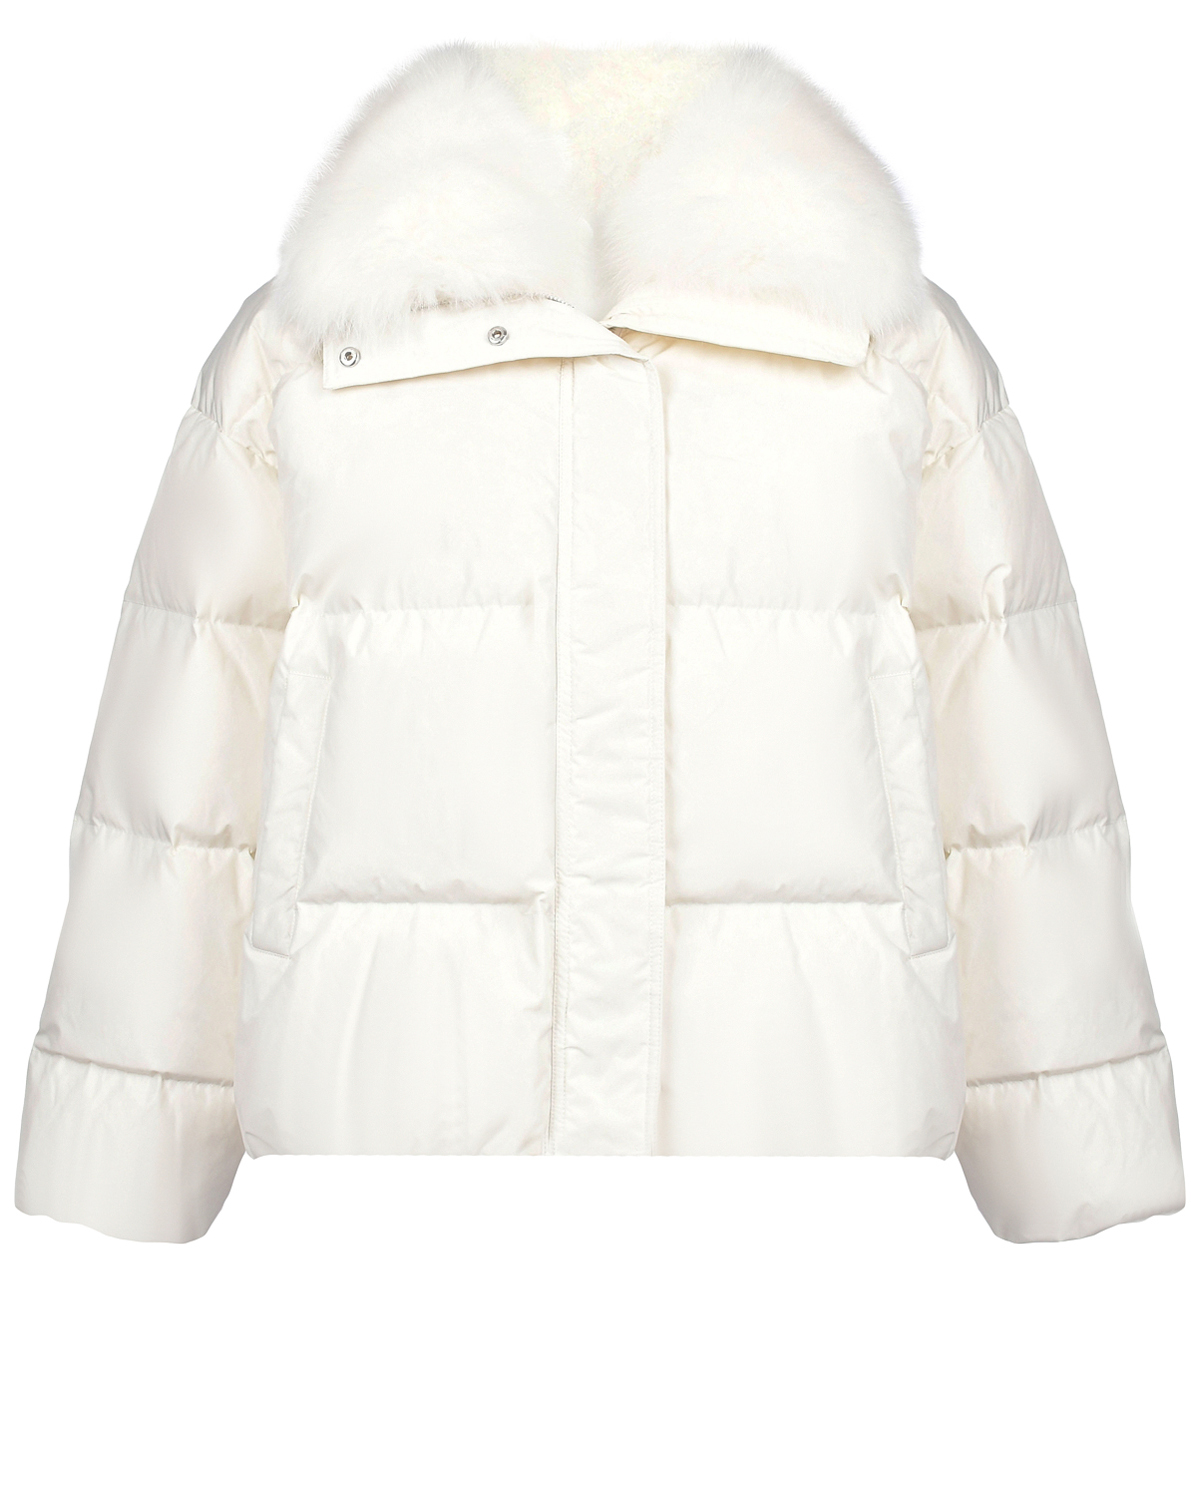 Короткая куртка молочного цвета с меховой отделкой Yves Salomon, размер 36